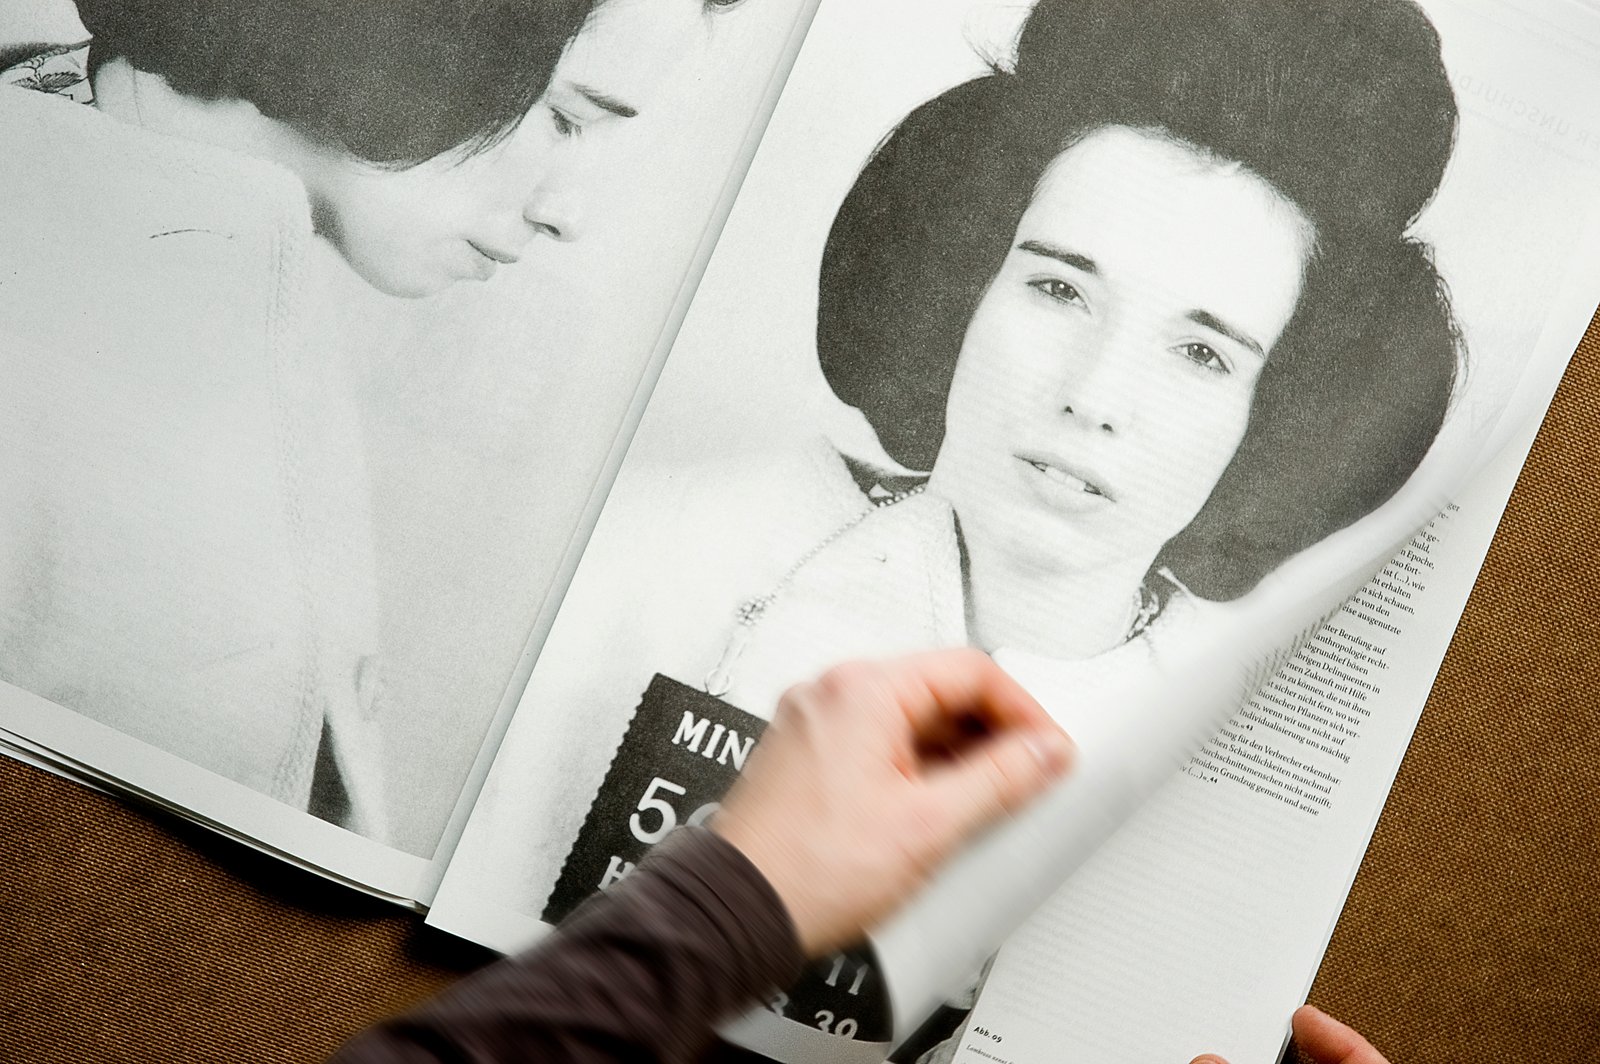 Zwischenseite einer Zeitung mit großen Mugshots Verbrecherfotos einer jungen Frau und auffälligen Frisur.